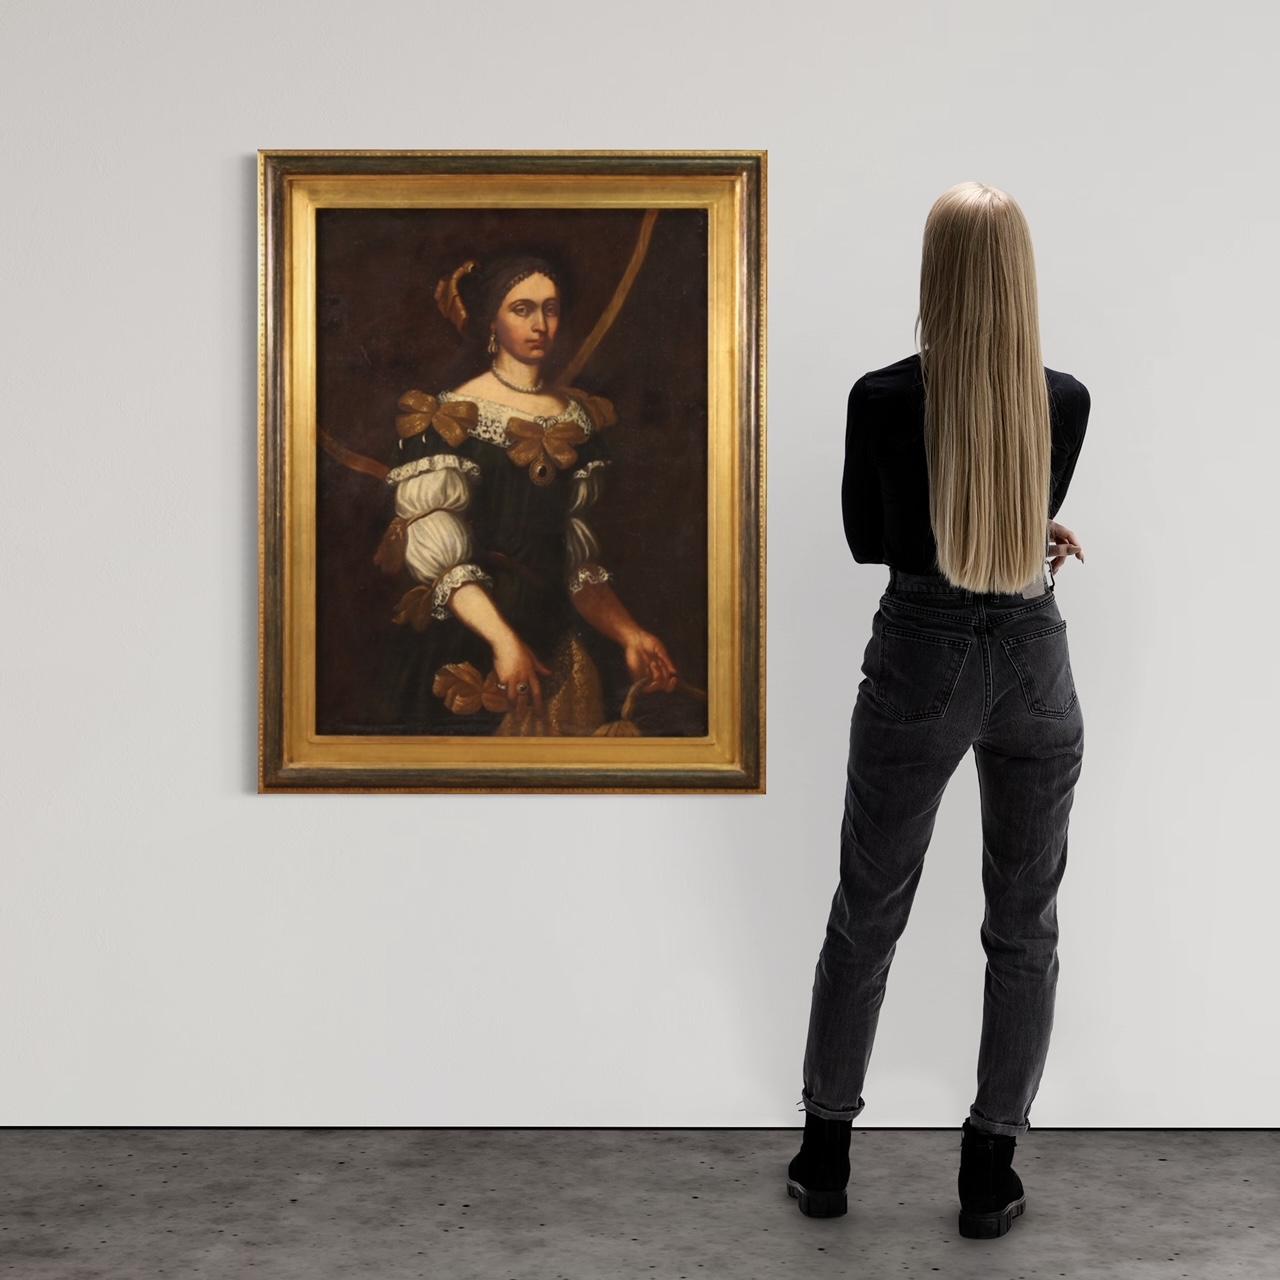 Peinture italienne ancienne de la première moitié du XVIIIe siècle. Huile sur toile représentant un portrait de femme, jeune femme noble en robe somptueuse, de bonne qualité picturale. Tableau de grande taille et de grand impact orné d'un cadre